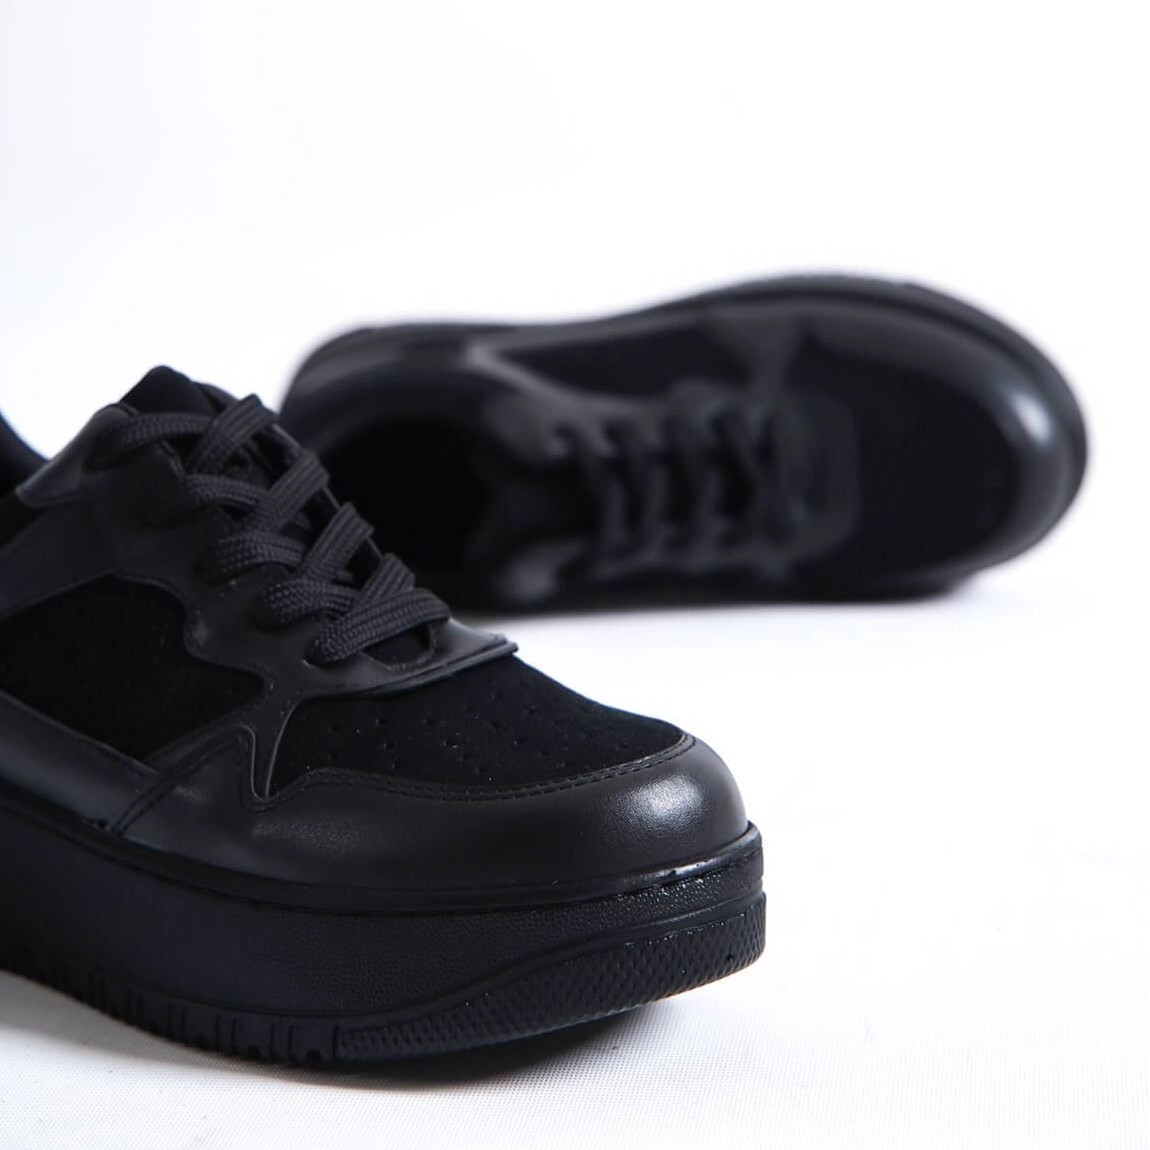 Süet Kalın Tabanlı Sneaker Spor Ayakkabı - Siyah